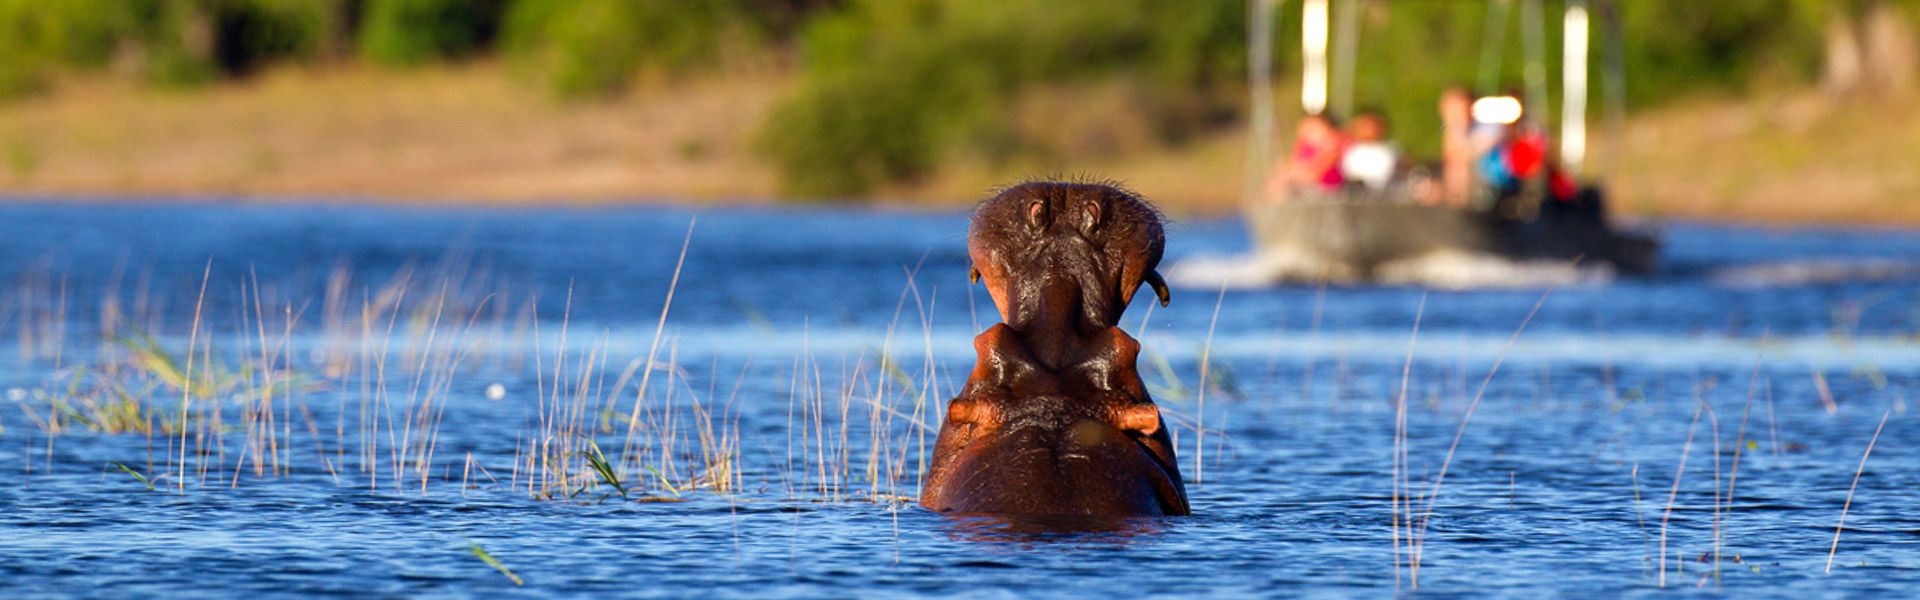 Boot auf dem Chobe nhert sich einem Flusspferd |  Lyle Gregg, iStockphoto / Chamleon